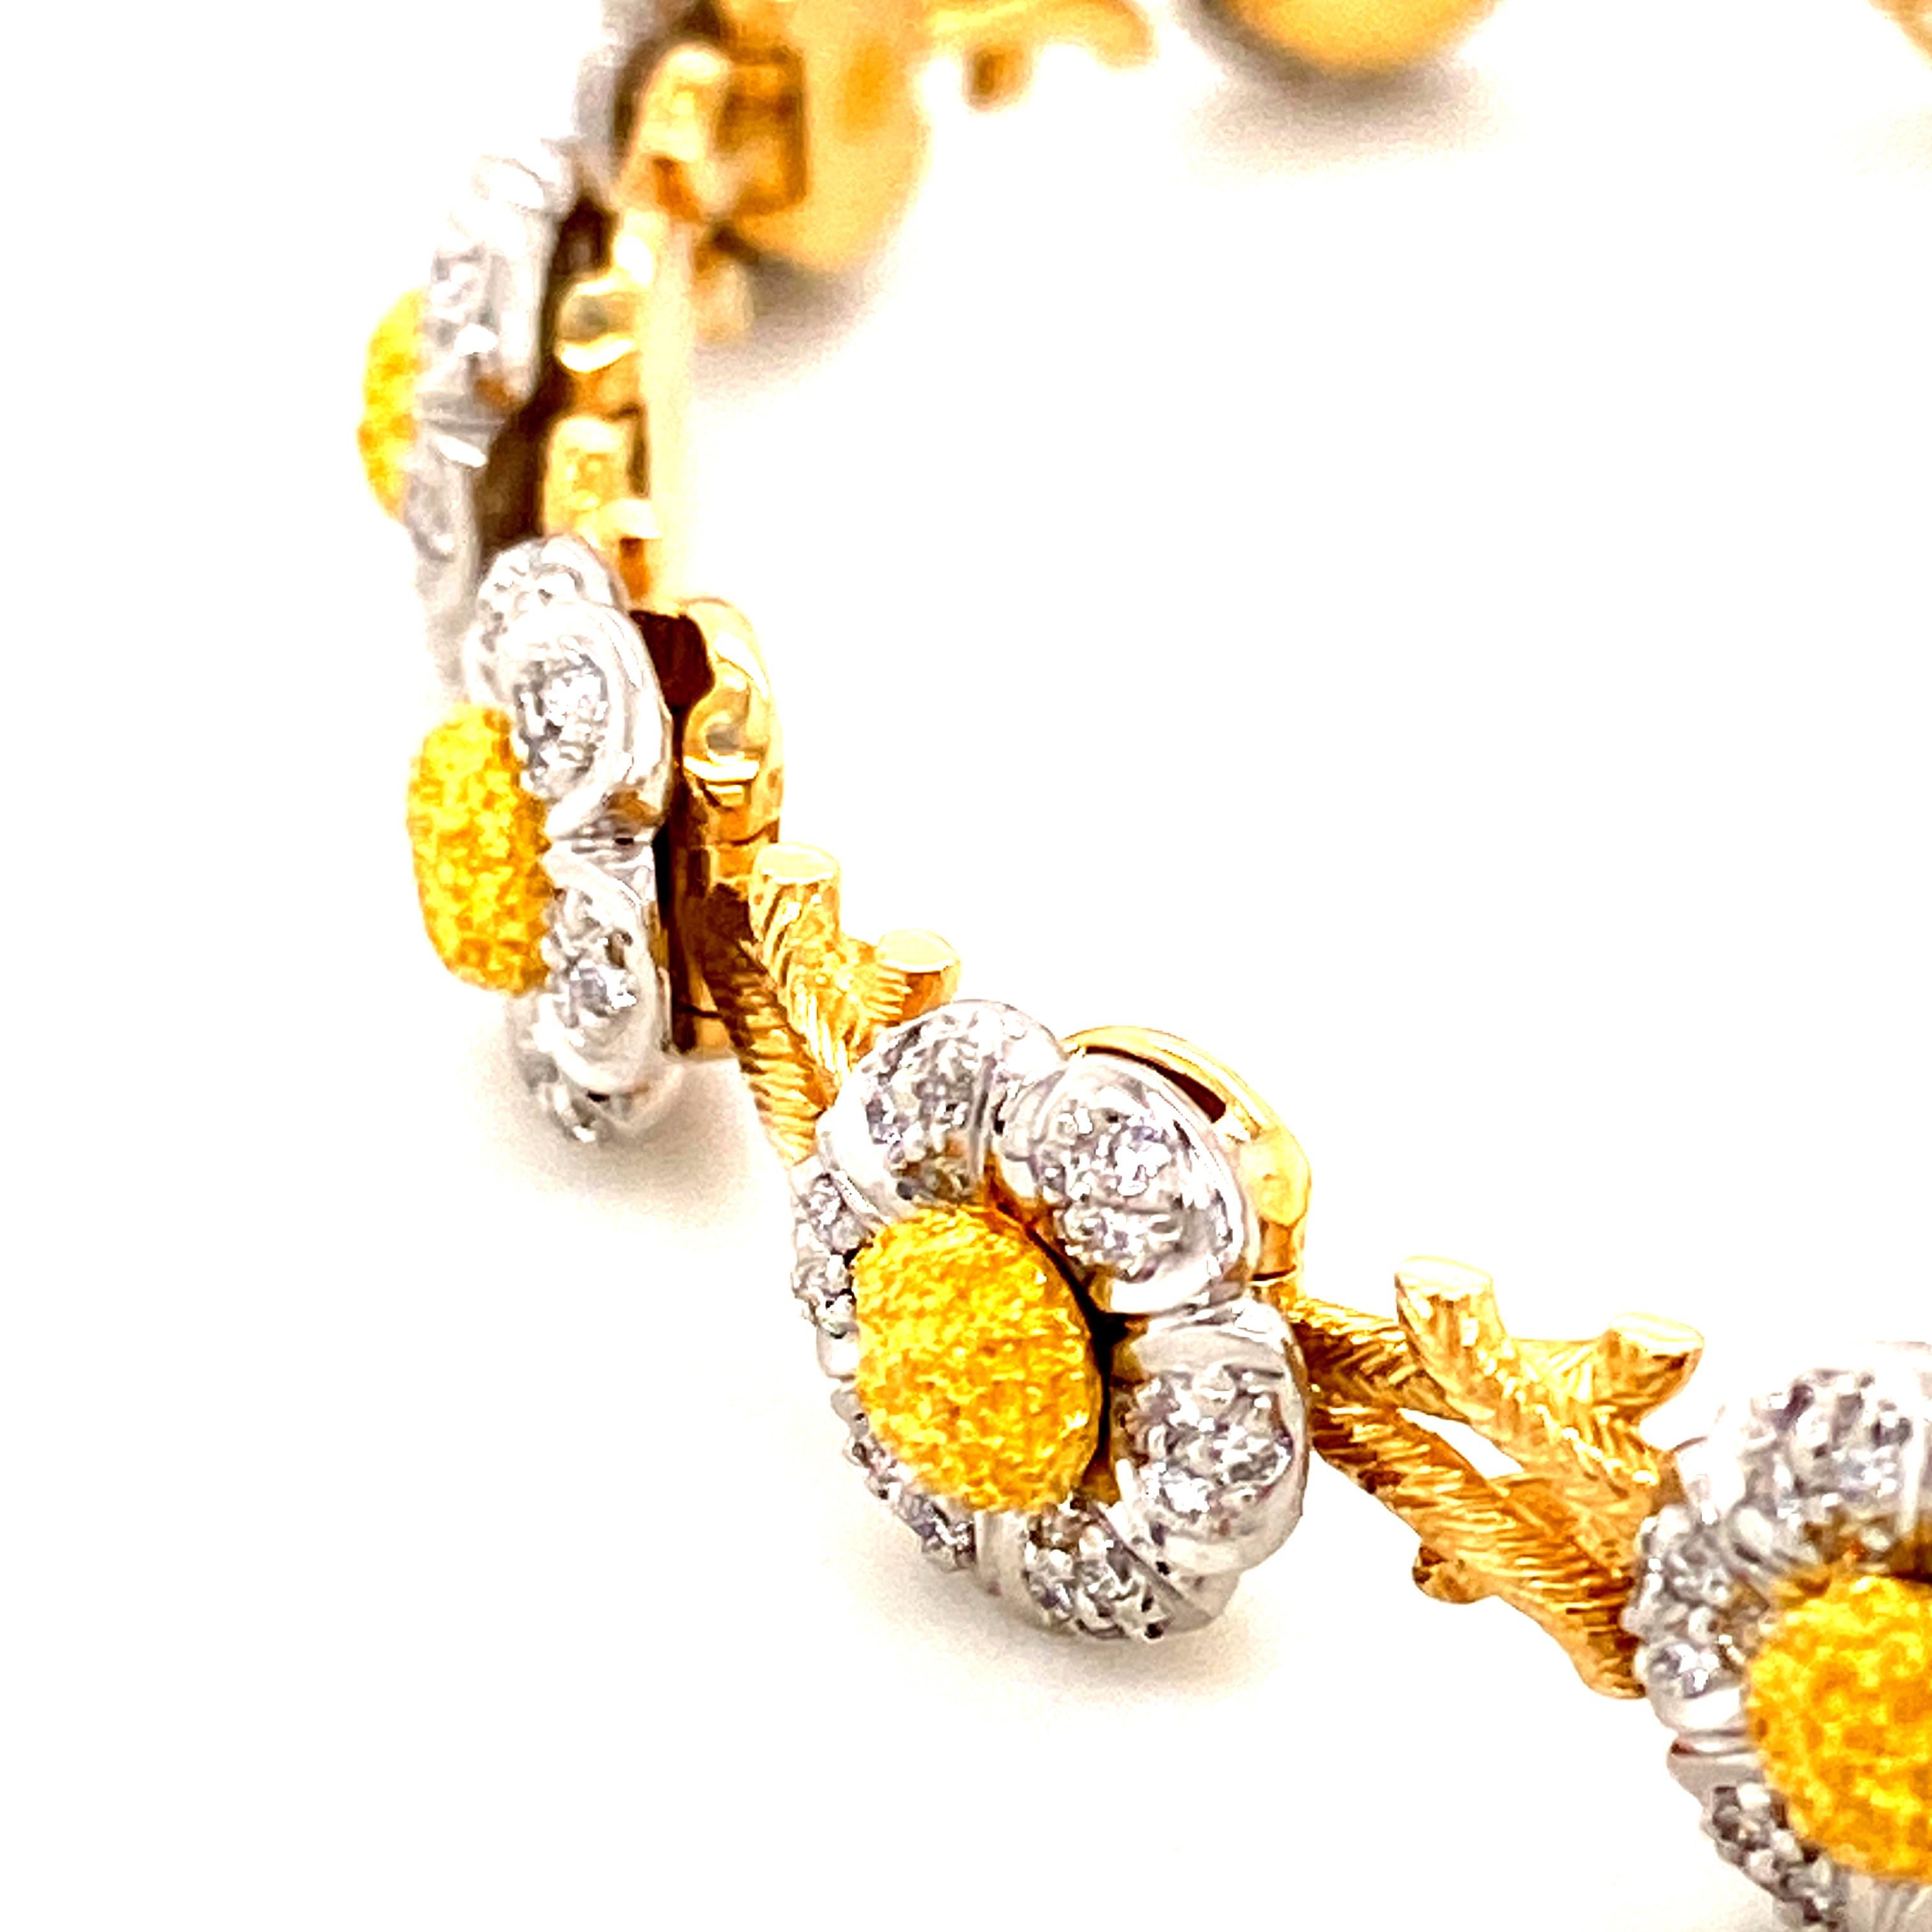 white gold bracelets for women